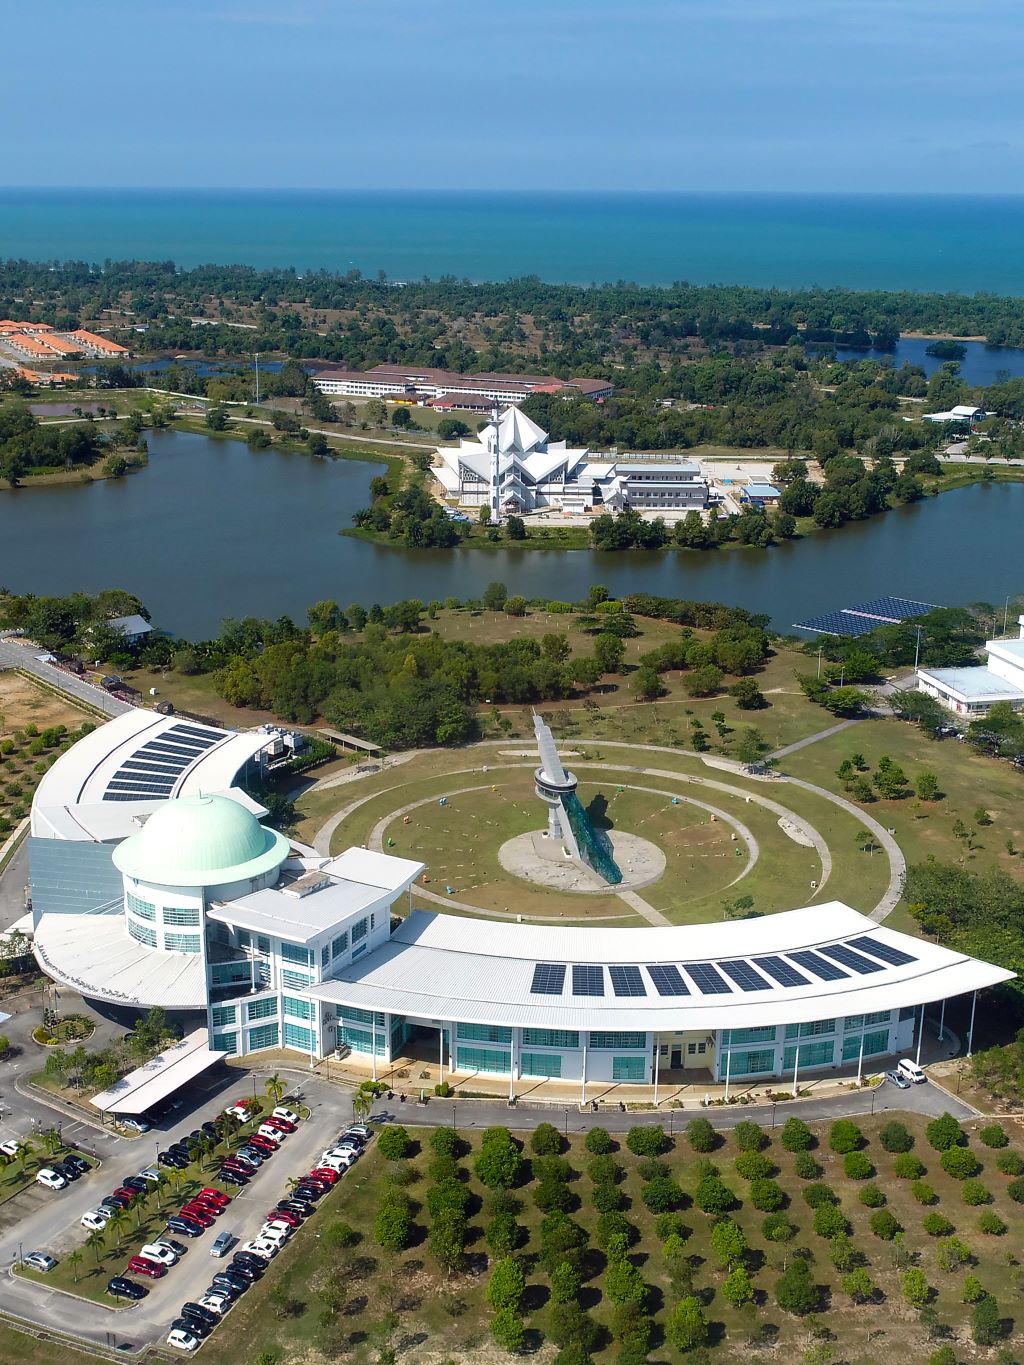 Tersergam indah pandangan dari udara bangunan Canseleri Tun Abdul Razak (CTAR) dan Masjid UMPSA di kampus Pekan.